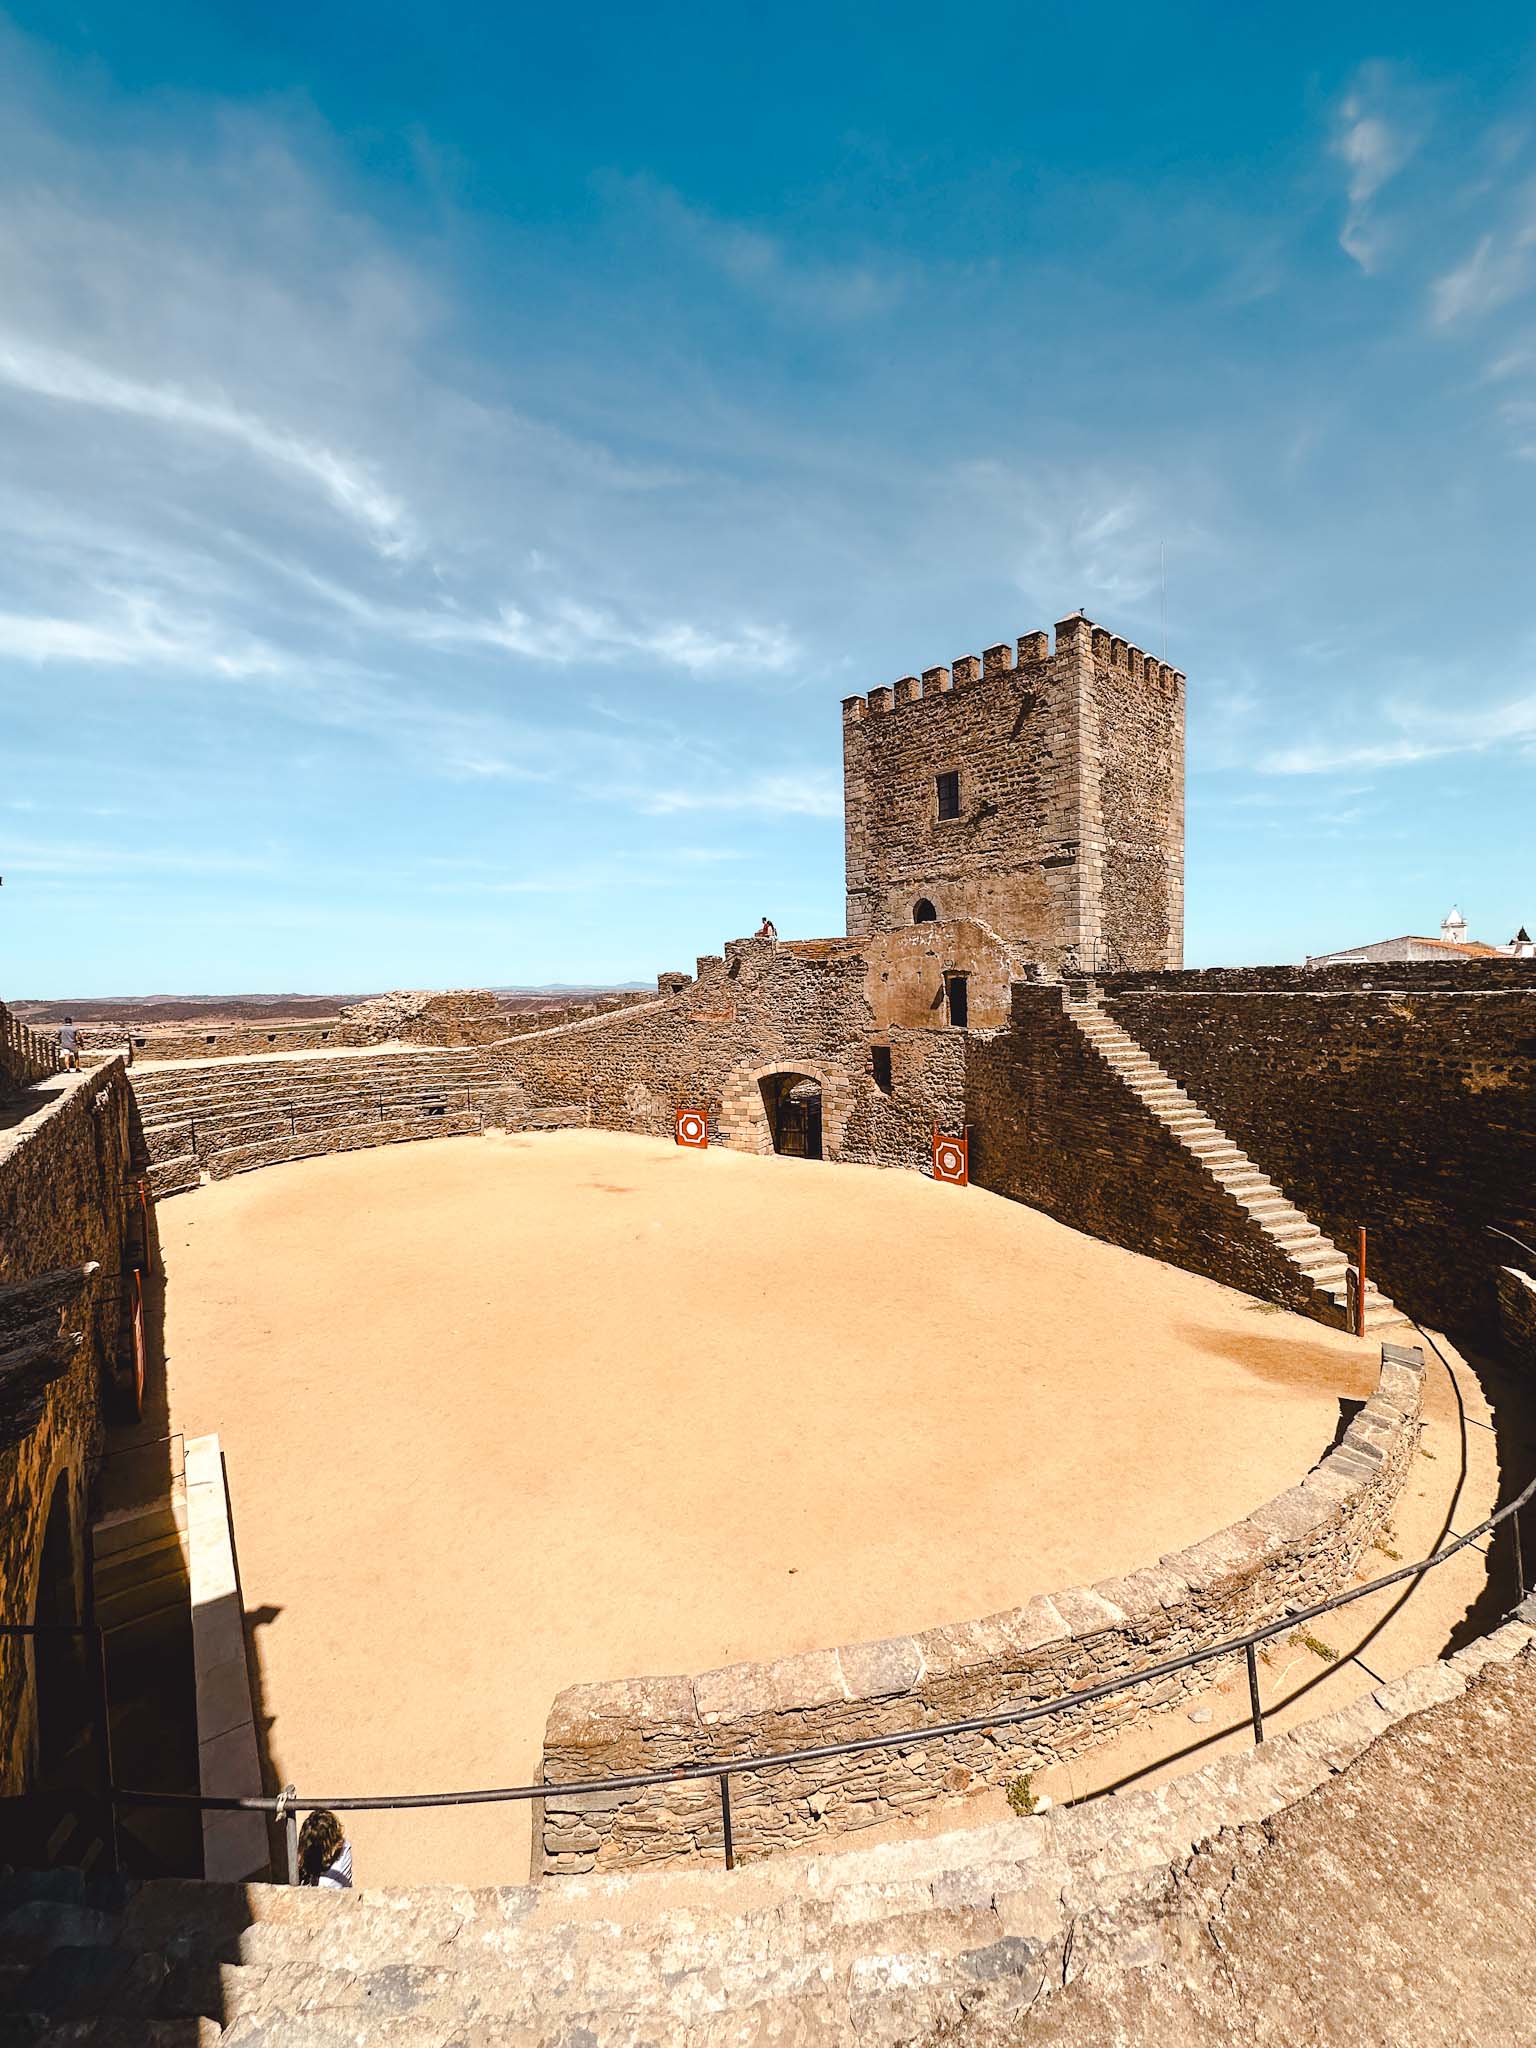 Castelo de Monsaraz - medieval hilltop town in Evora district in Portugal